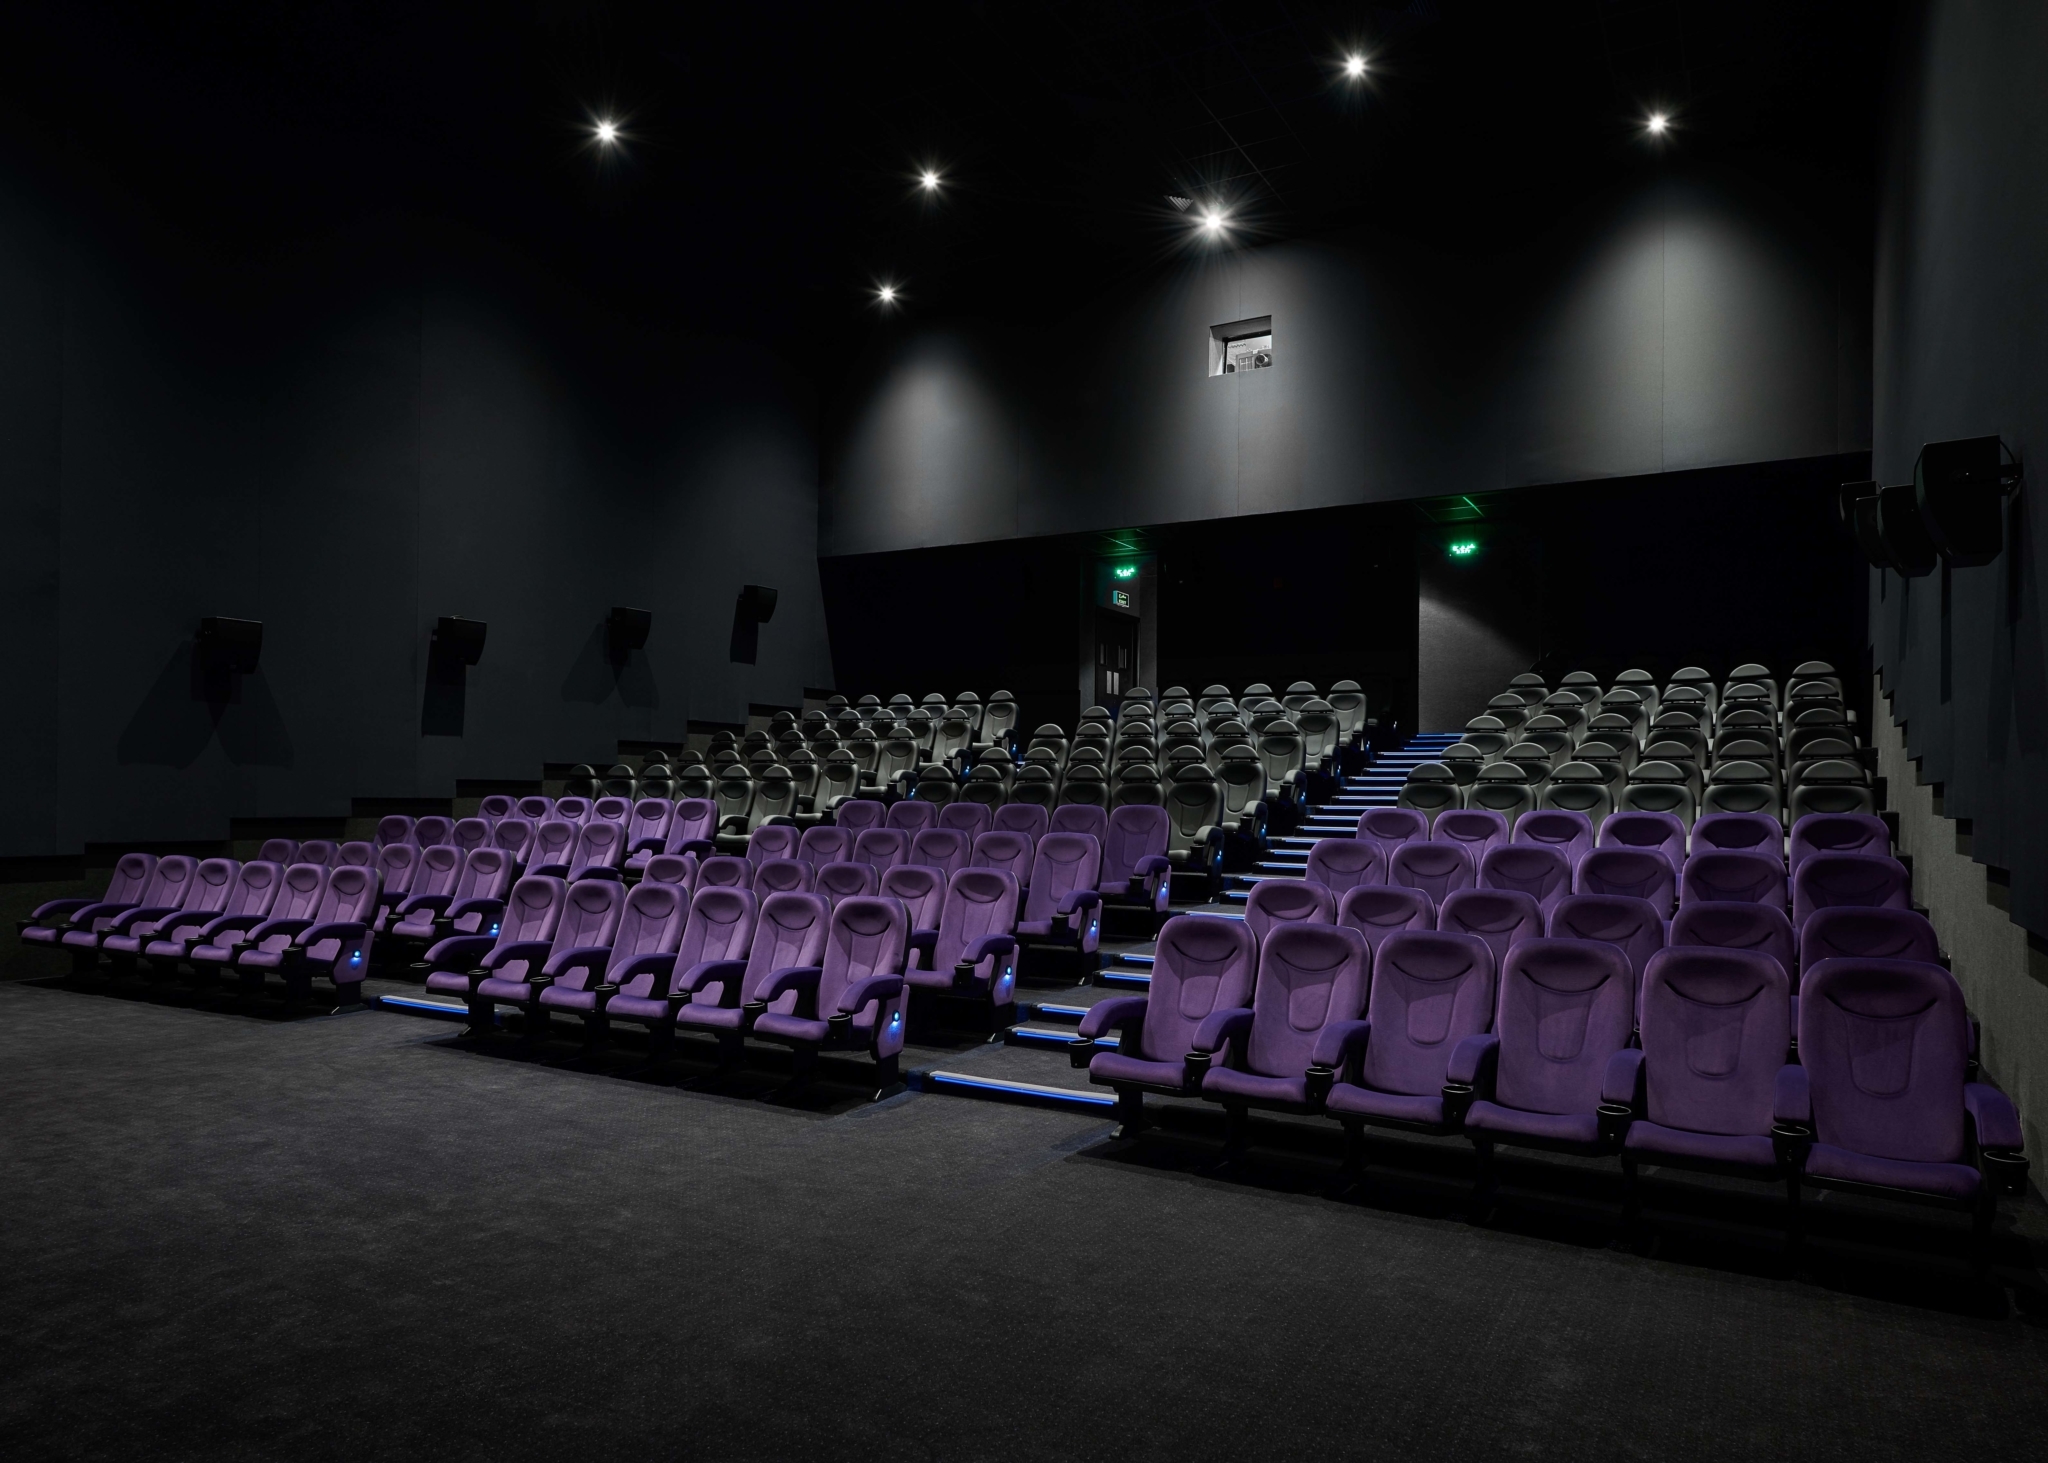 Reel Cinemas  Reel cinema, Cinema, Cinema experience